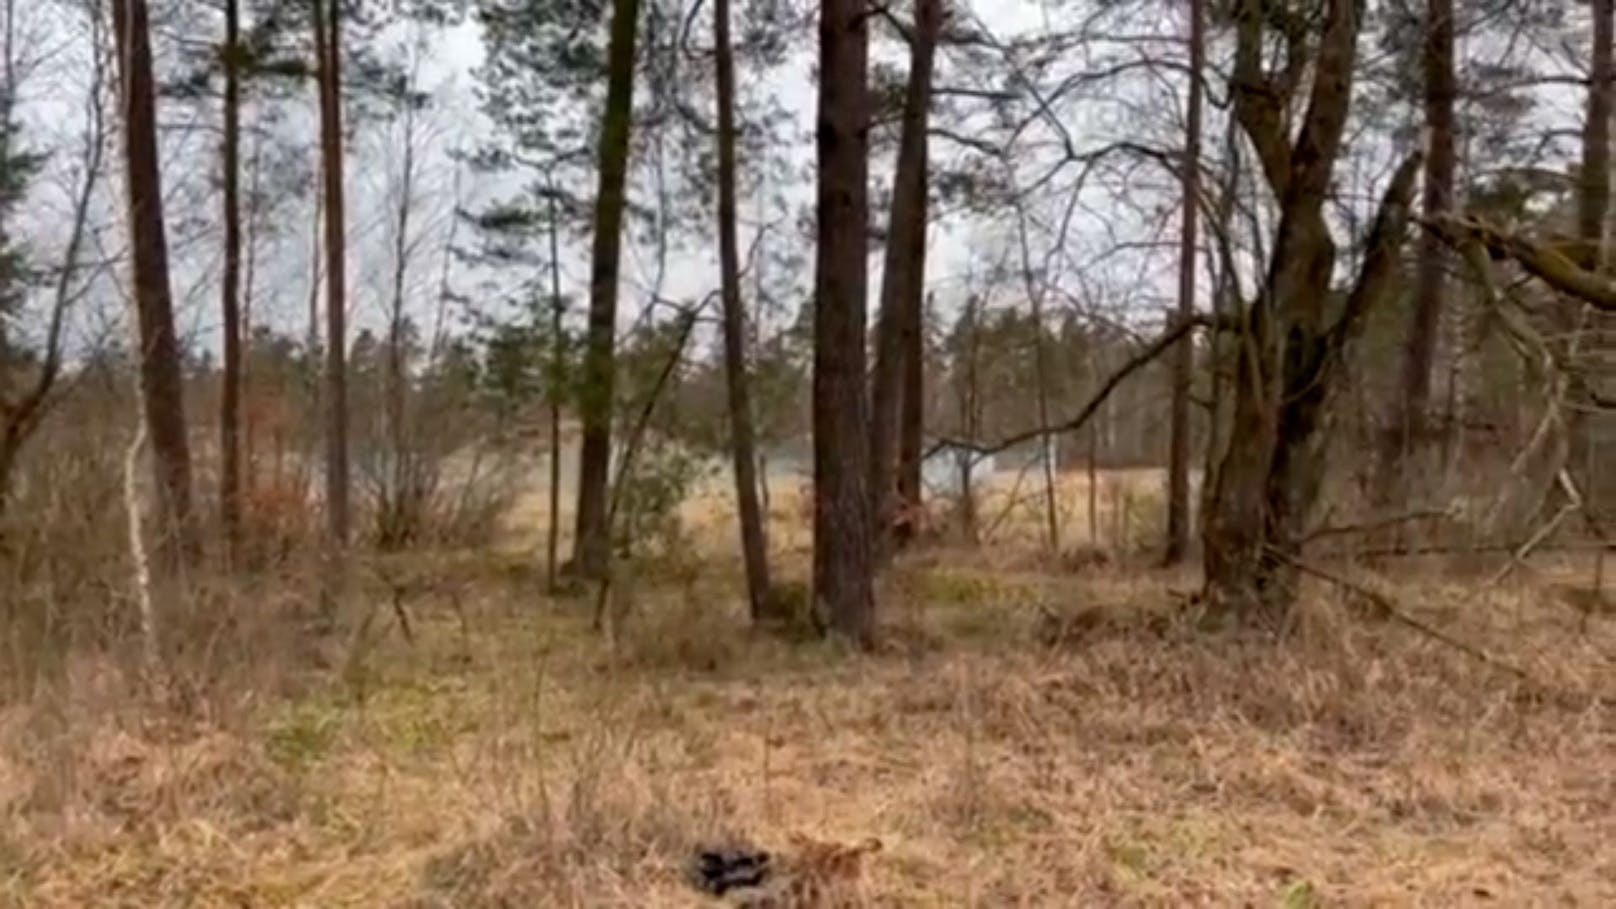 Schau gut hin! In diesem kleinen Waldstück verstecken sich zehn ukrainische Kämpfer.